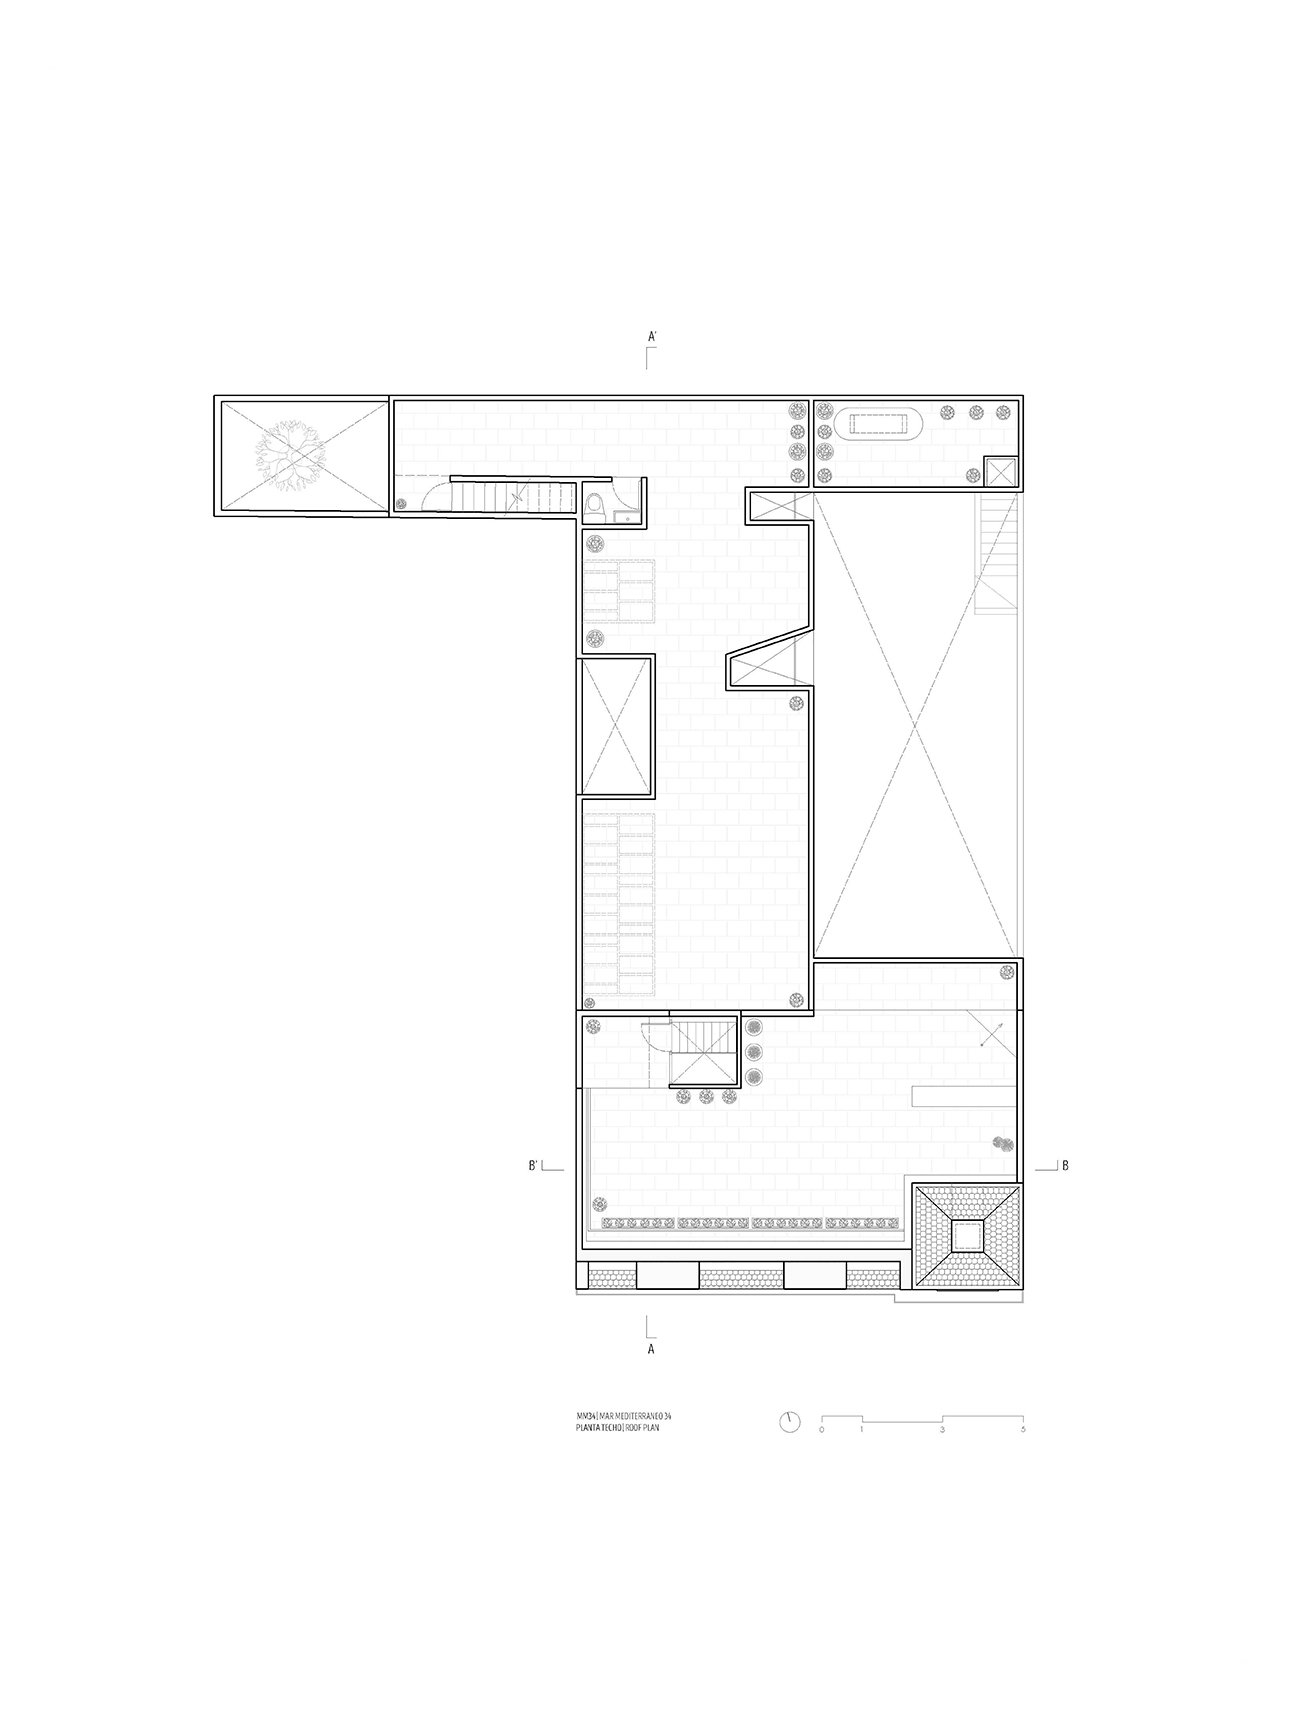 Roof Plan | Inca Hernandez